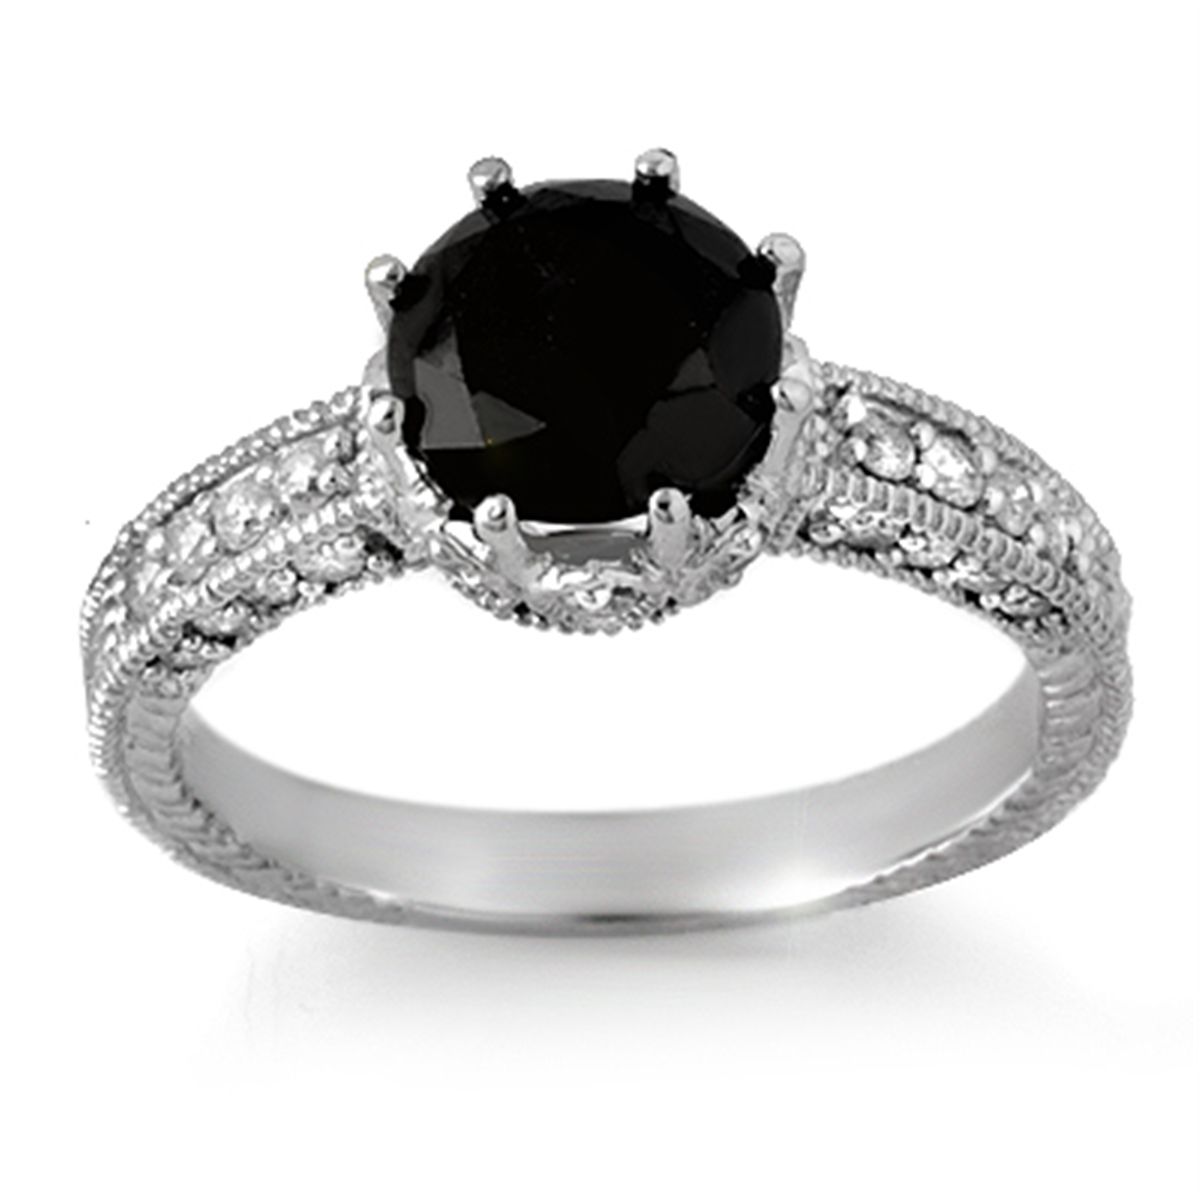 The Sensuous Black Diamond Rings